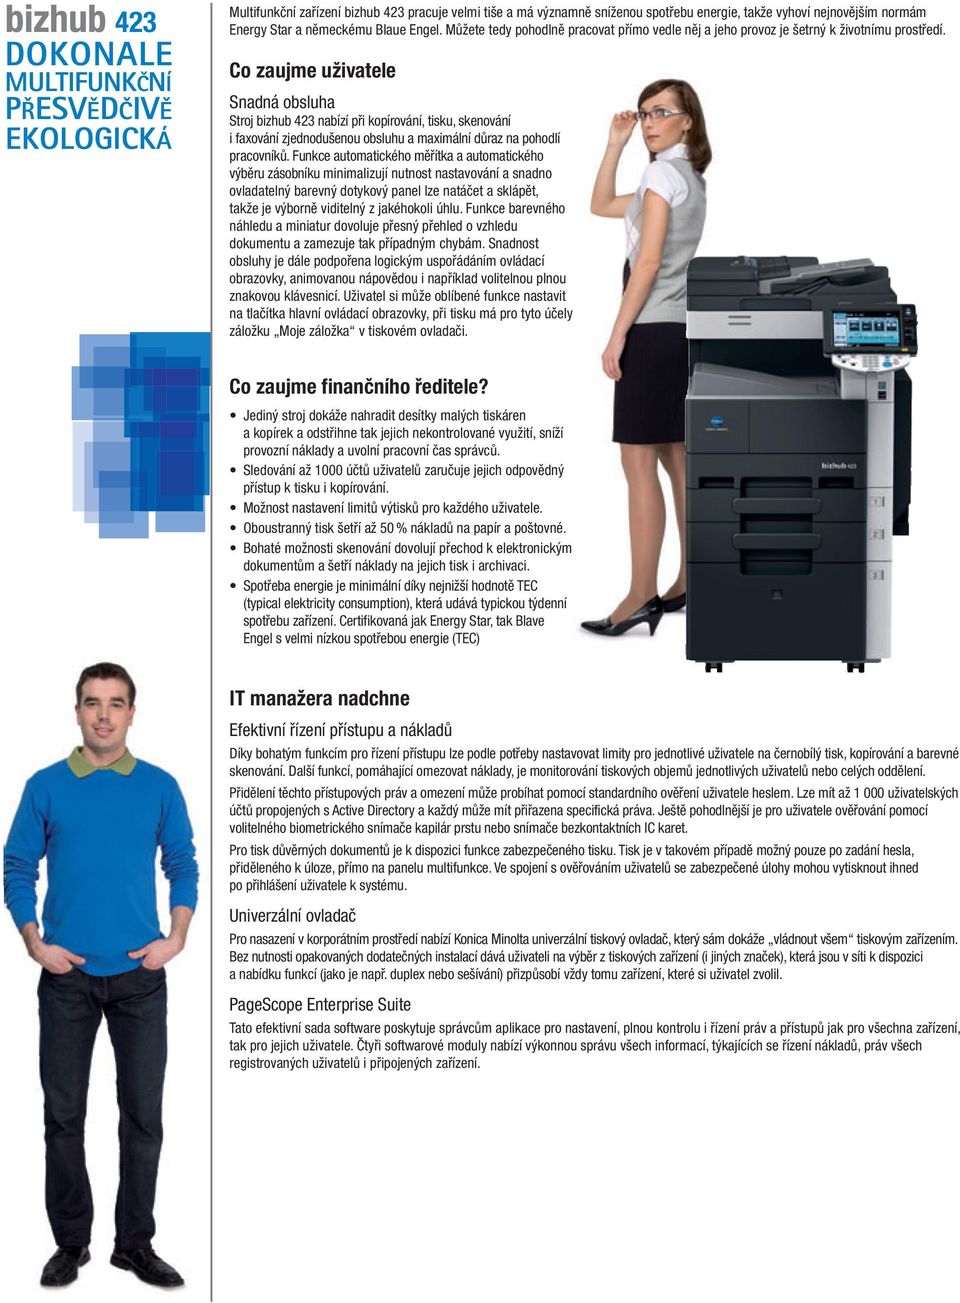 Co zaujme uživatele Snadná obsluha Stroj bizhub 423 nabízí při kopírování, tisku, skenování i faxování zjednodušenou obsluhu a maximální důraz na pohodlí pracovníků.